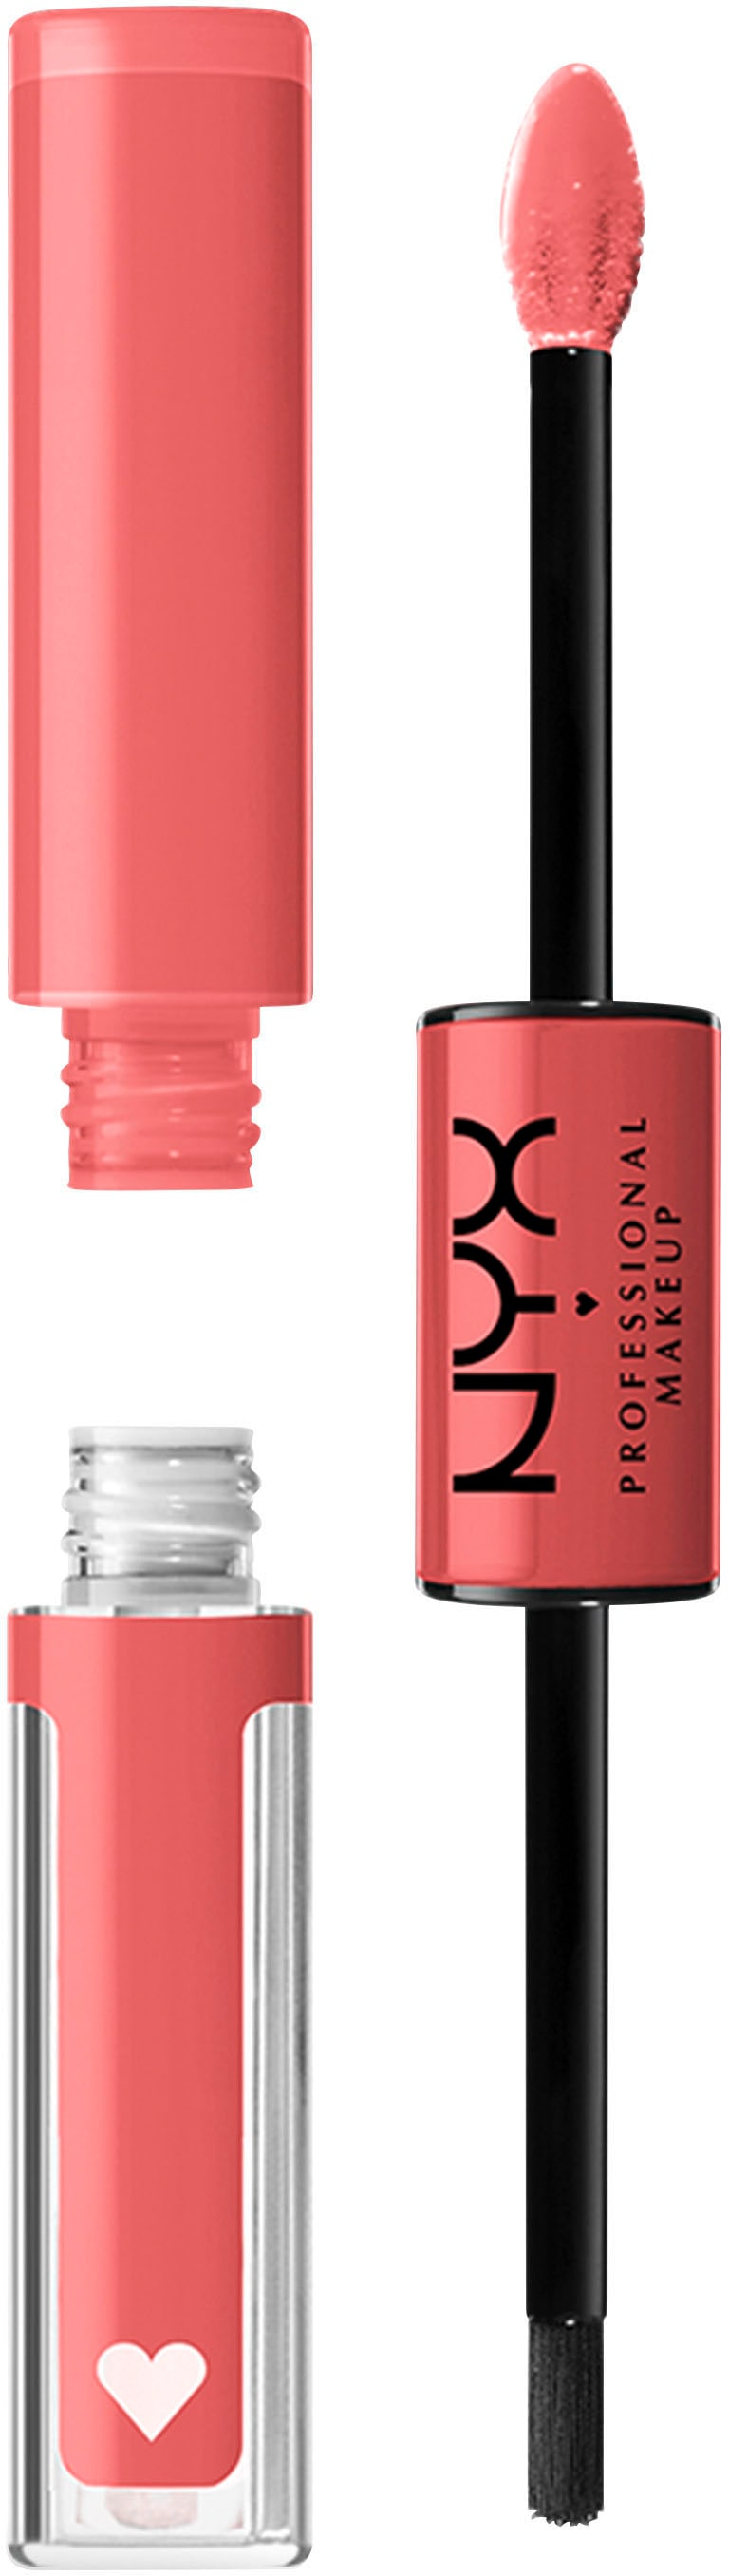 NYX Lippenstift Shine mit online Applikator kaufen Makeup Loud Pigment Lip UNIVERSAL »Professional High geformtem präziser | Auftrag Shine«